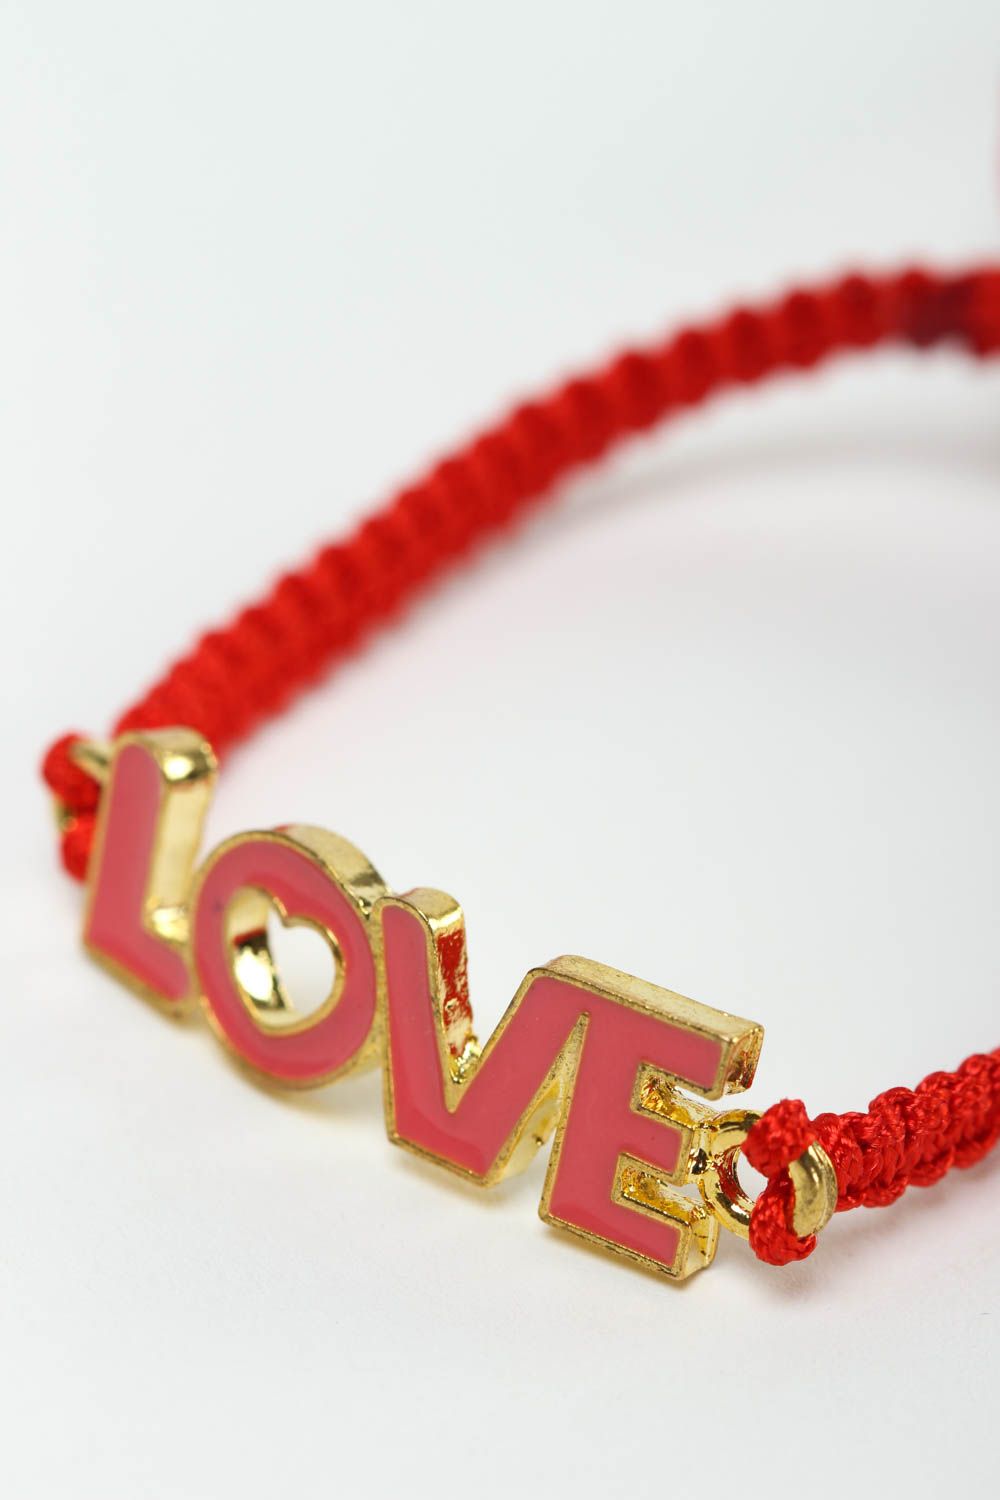 Модный браслет бижутерия ручной работы модное украшение Love красное на руку фото 3